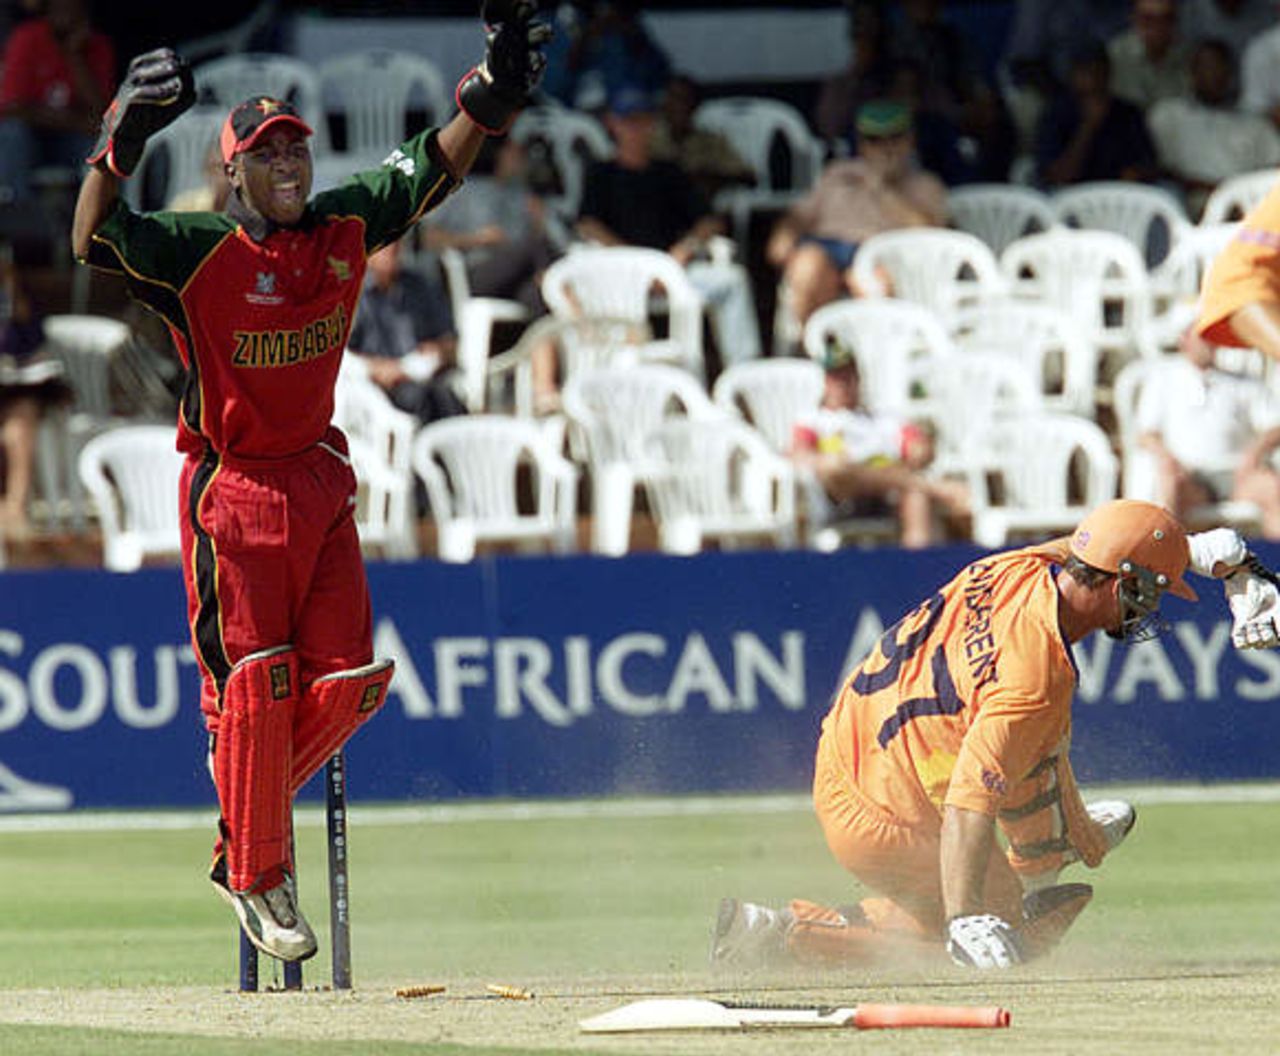 World Cup, 2003 - Zimbabwe v Netherlands at Bulawayo, 28th February 2003